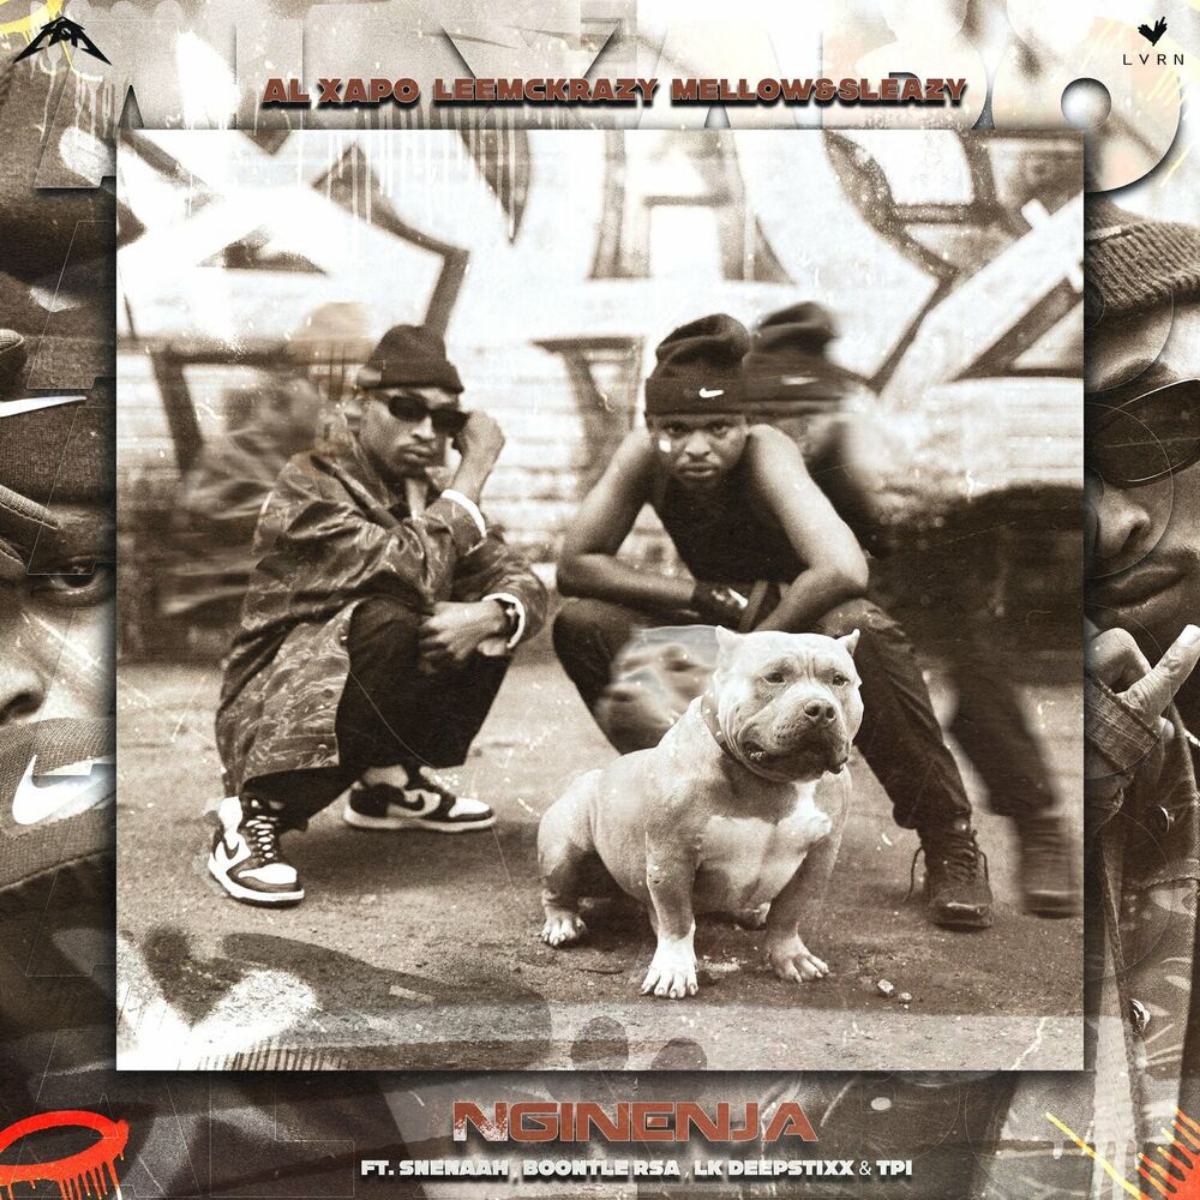 Al Xapo, LeeMcKrazy, Mellow & Sleazy – Nginenja (feat. Sneenah, Boontle RSA, LK Deepstix & TPI)